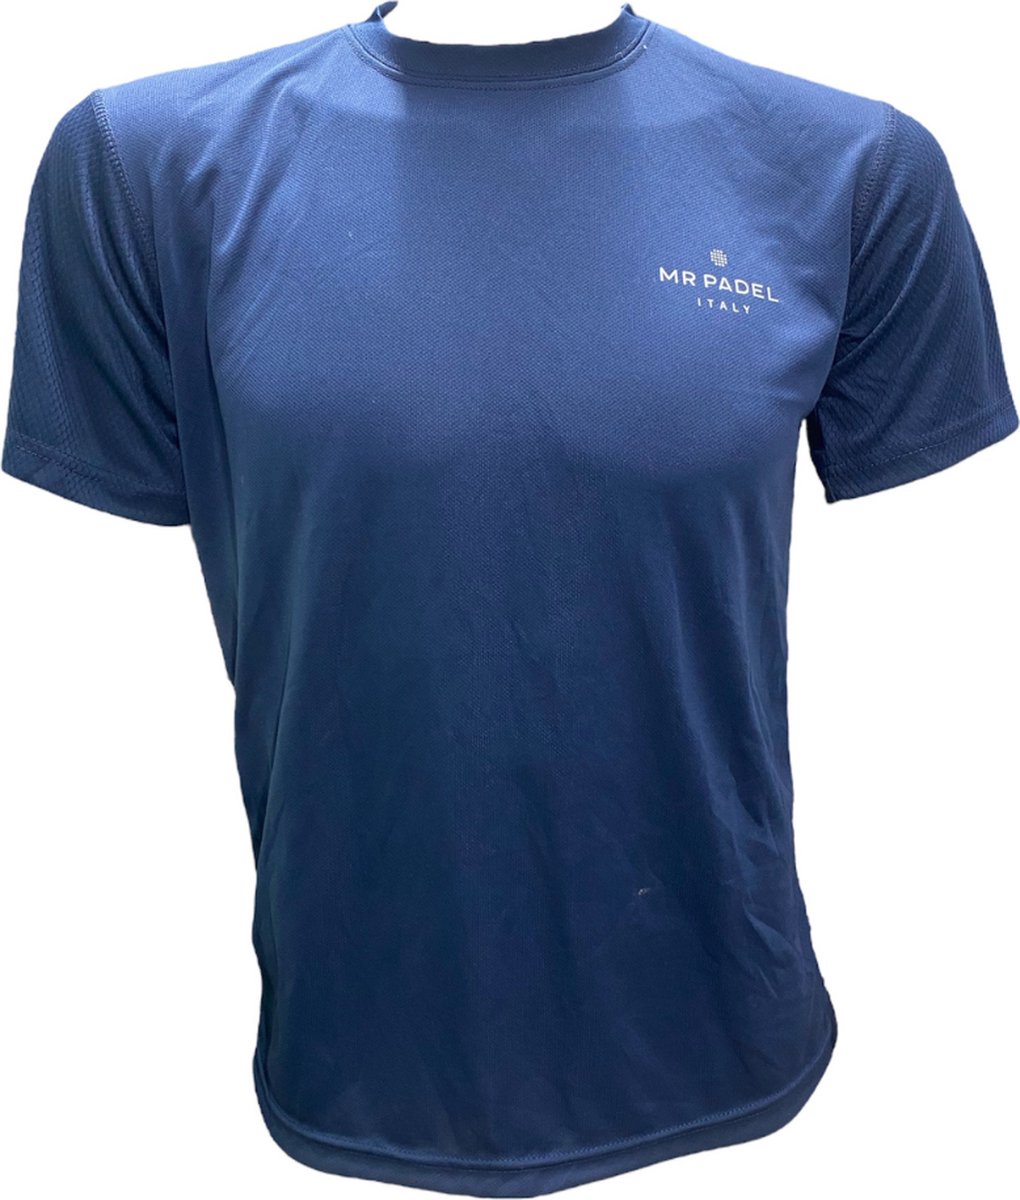 Mr Padel -Dark Blue Maat S - Men's Slim Fit Padel Shirt